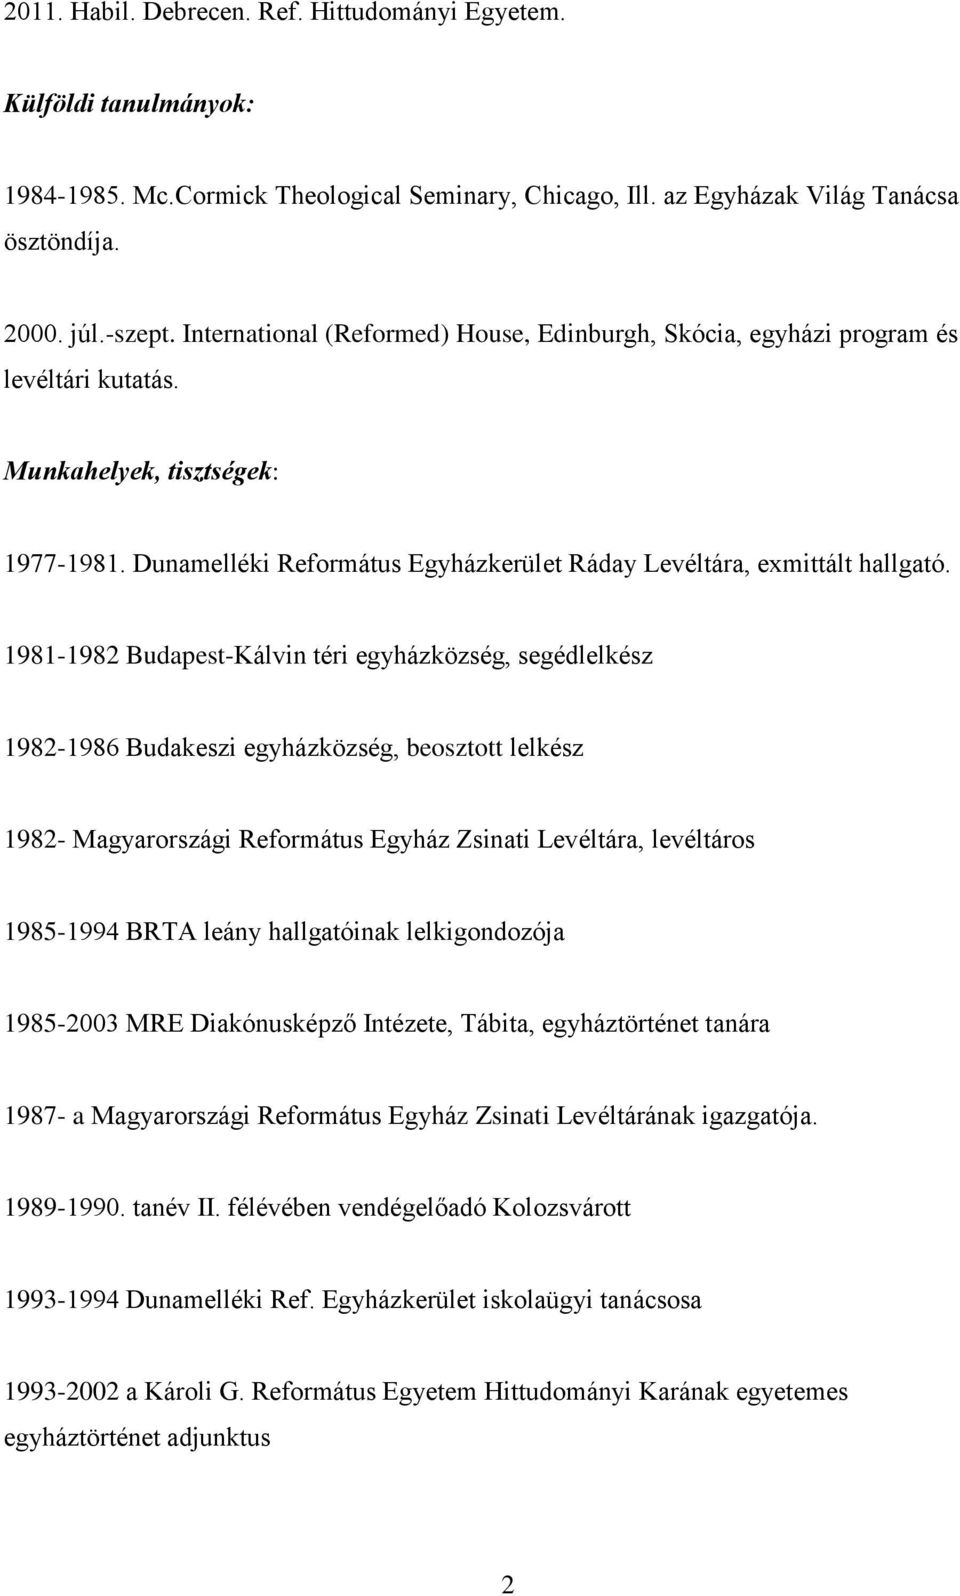 1981-1982 Budapest-Kálvin téri egyházközség, segédlelkész 1982-1986 Budakeszi egyházközség, beosztott lelkész 1982- Magyarországi Református Egyház Zsinati Levéltára, levéltáros 1985-1994 BRTA leány